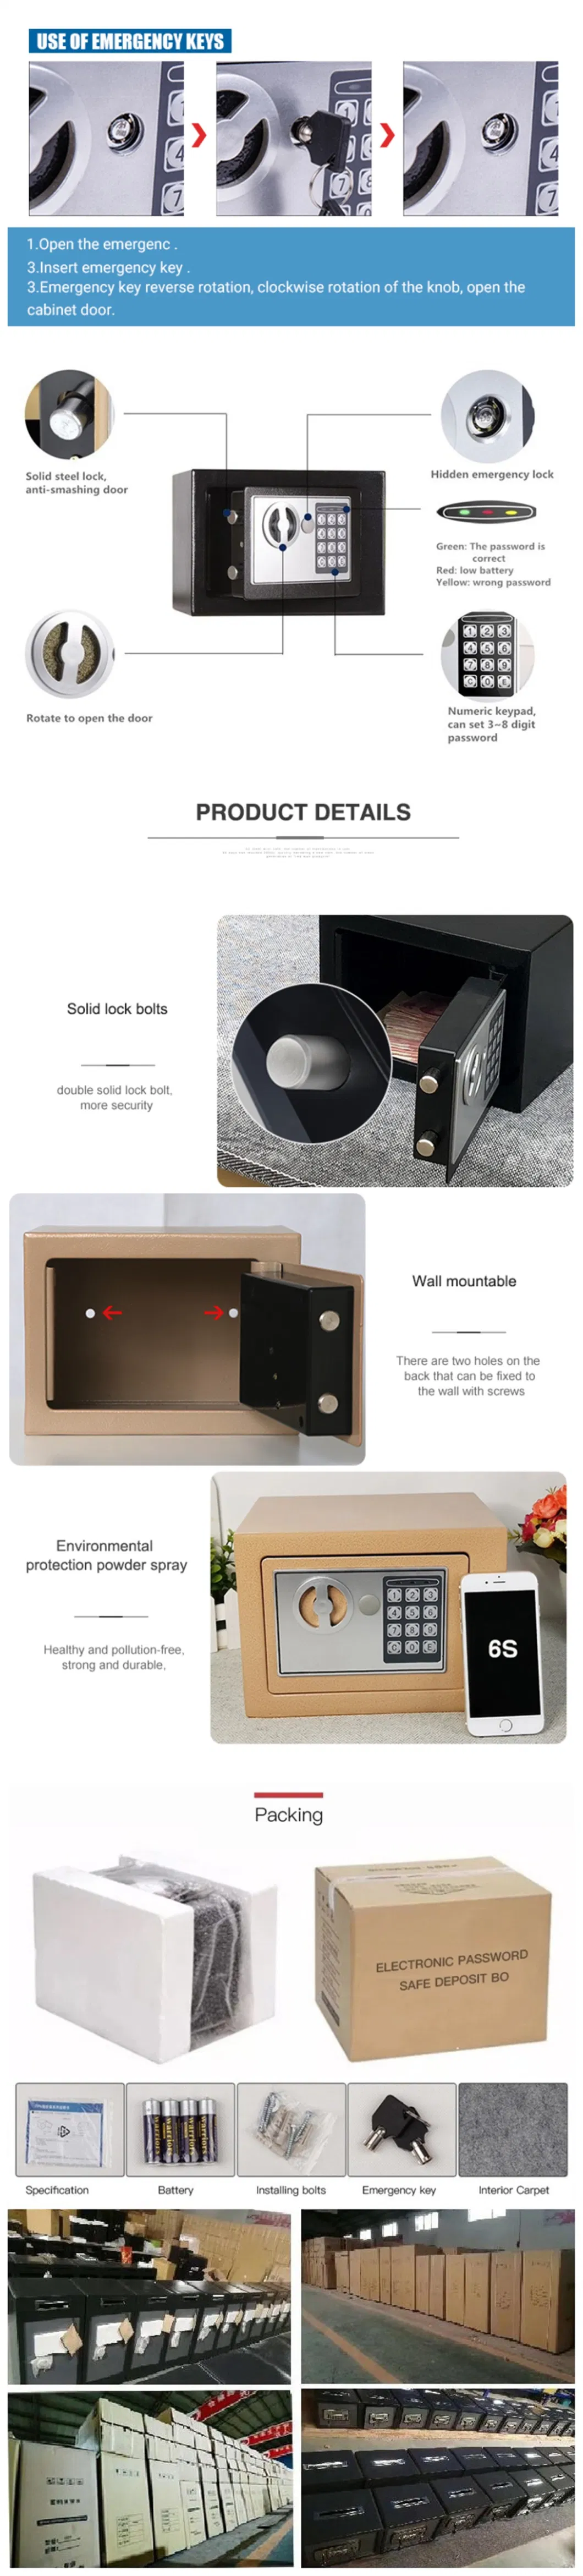 Mini Modern Hotel Furniture Cash Car Digital Security Safe Box